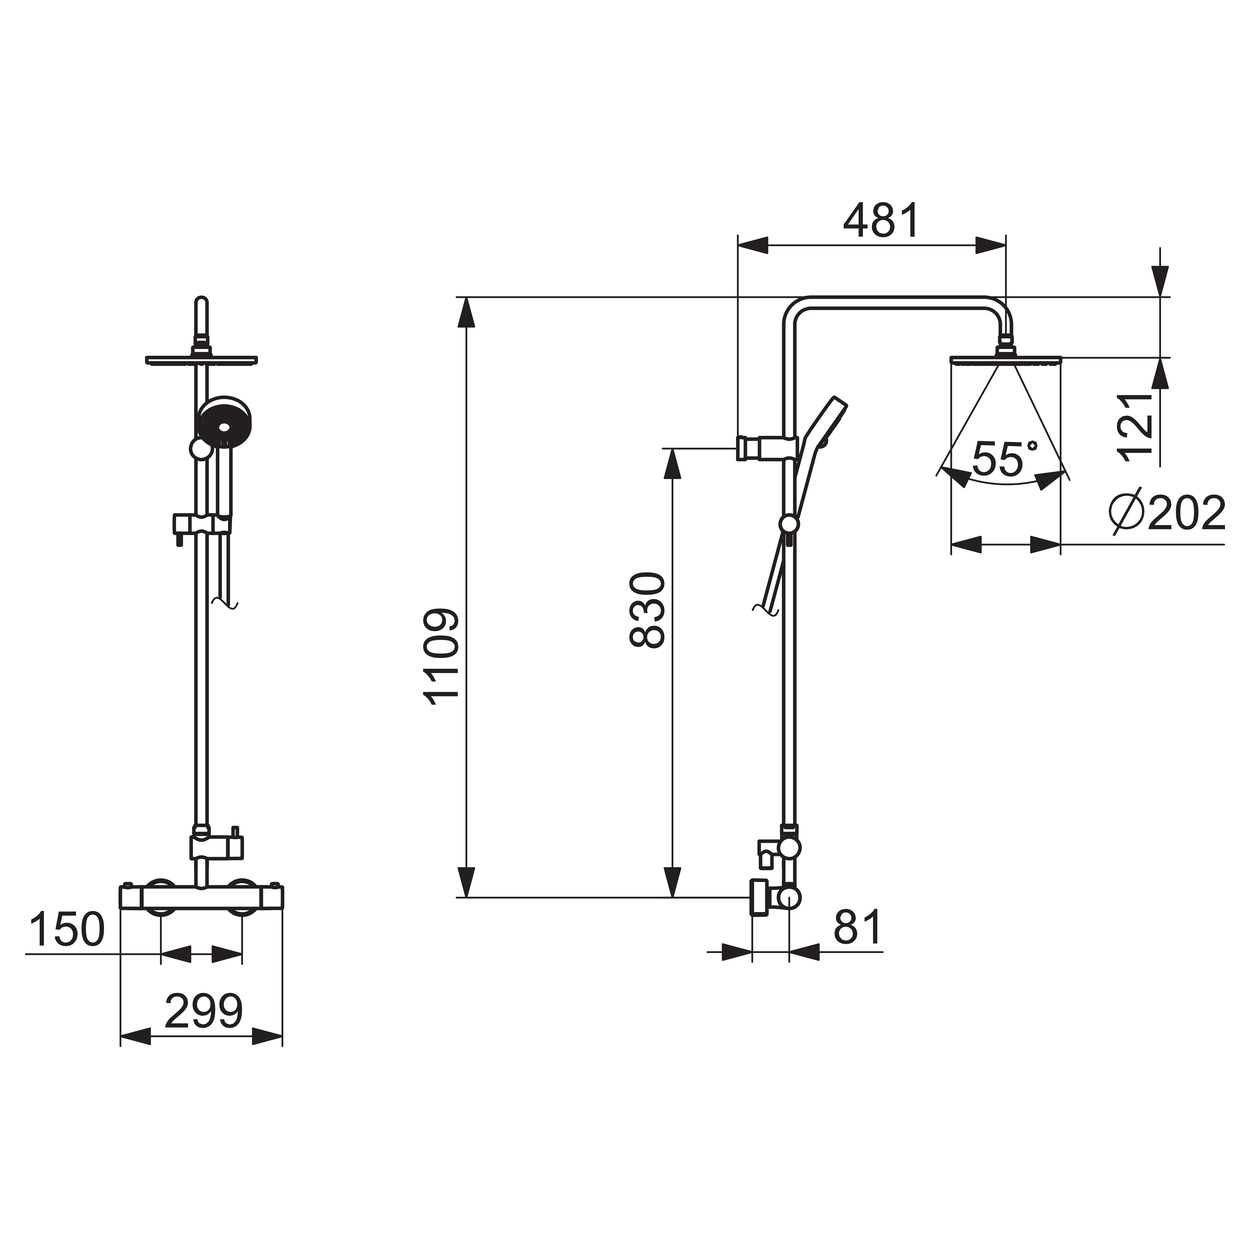 Tuš sistemi 58149103 Hansa Unita termostatska armatura s tuš setom | KOPALNICA-ONLINE.SI